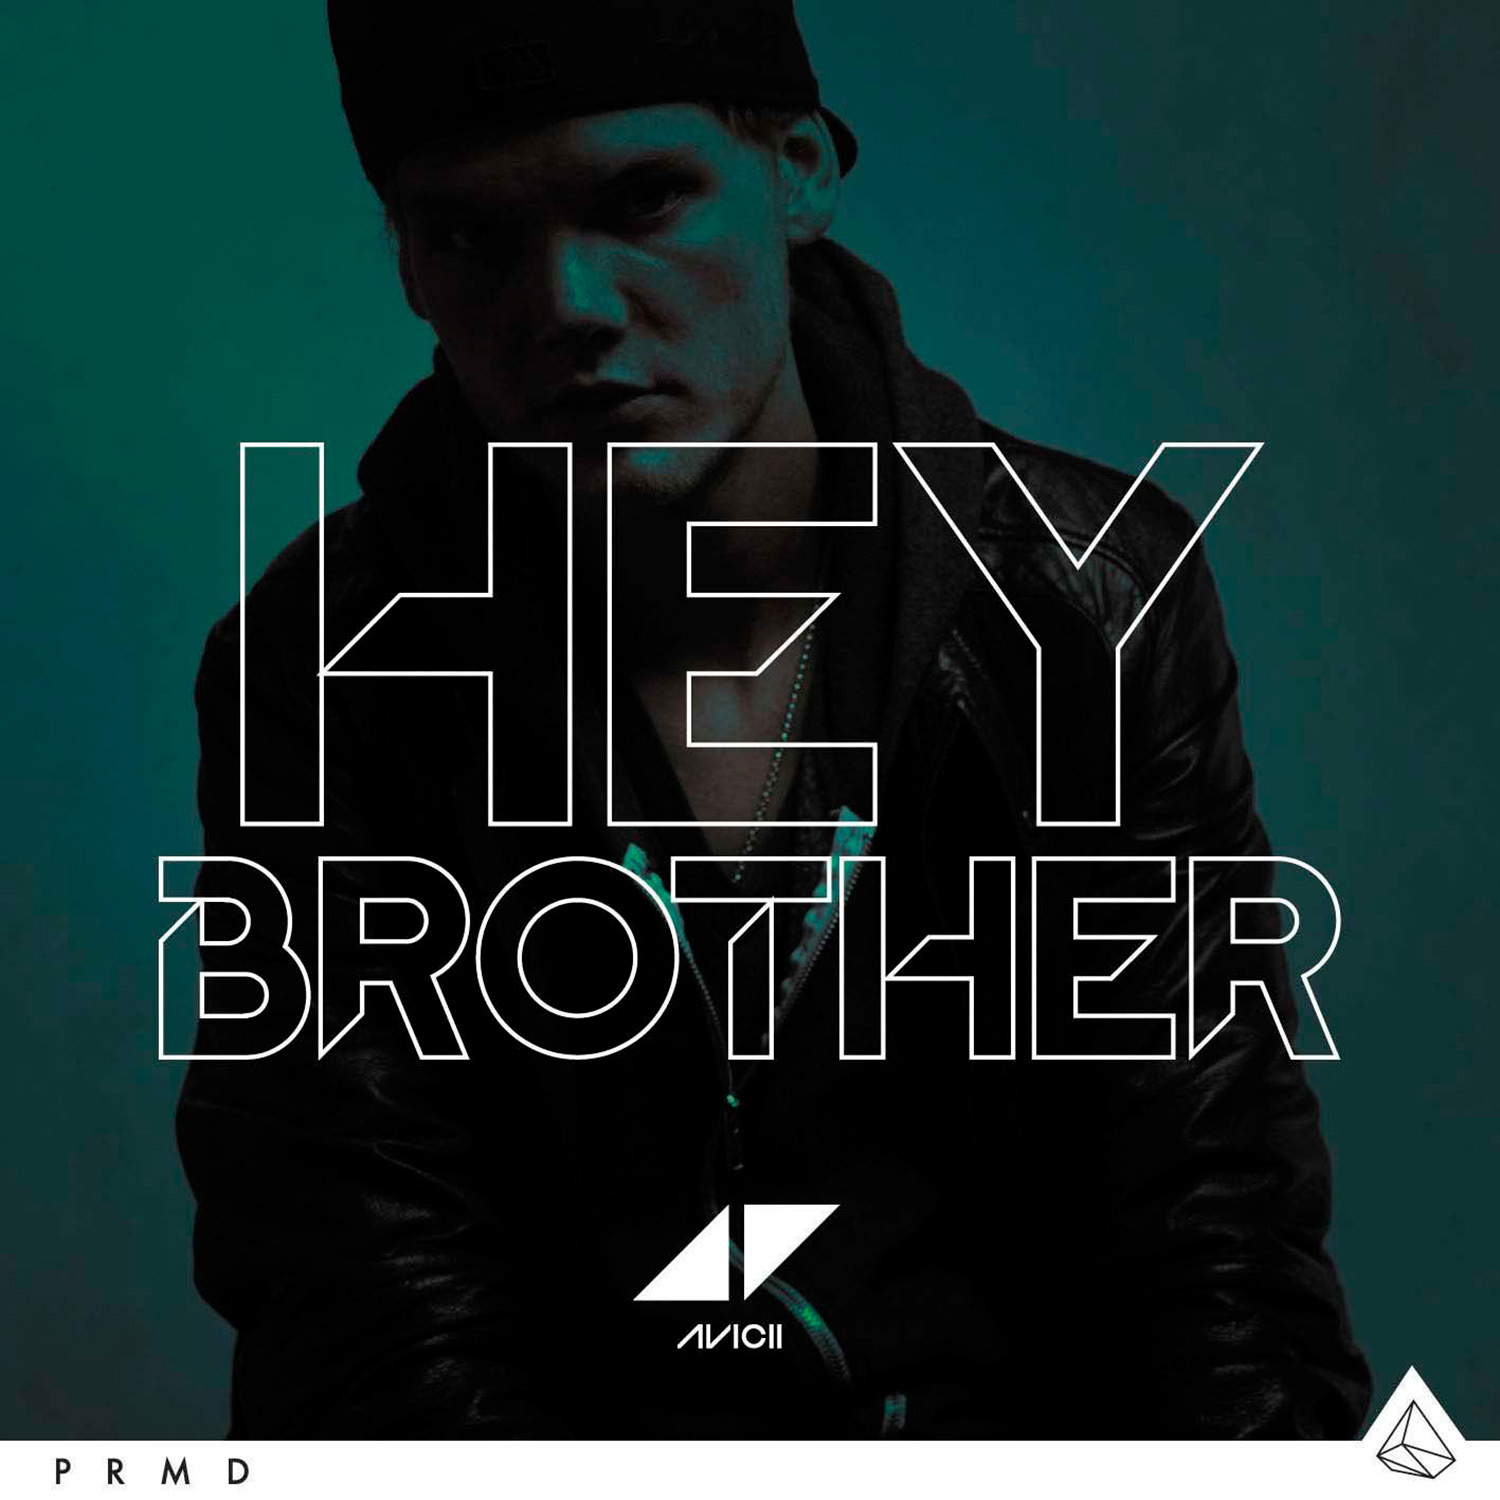 Dopo il successo planetario di "Wake Me Up", torna AVICII con il nuovo singolo "Hey Brother"